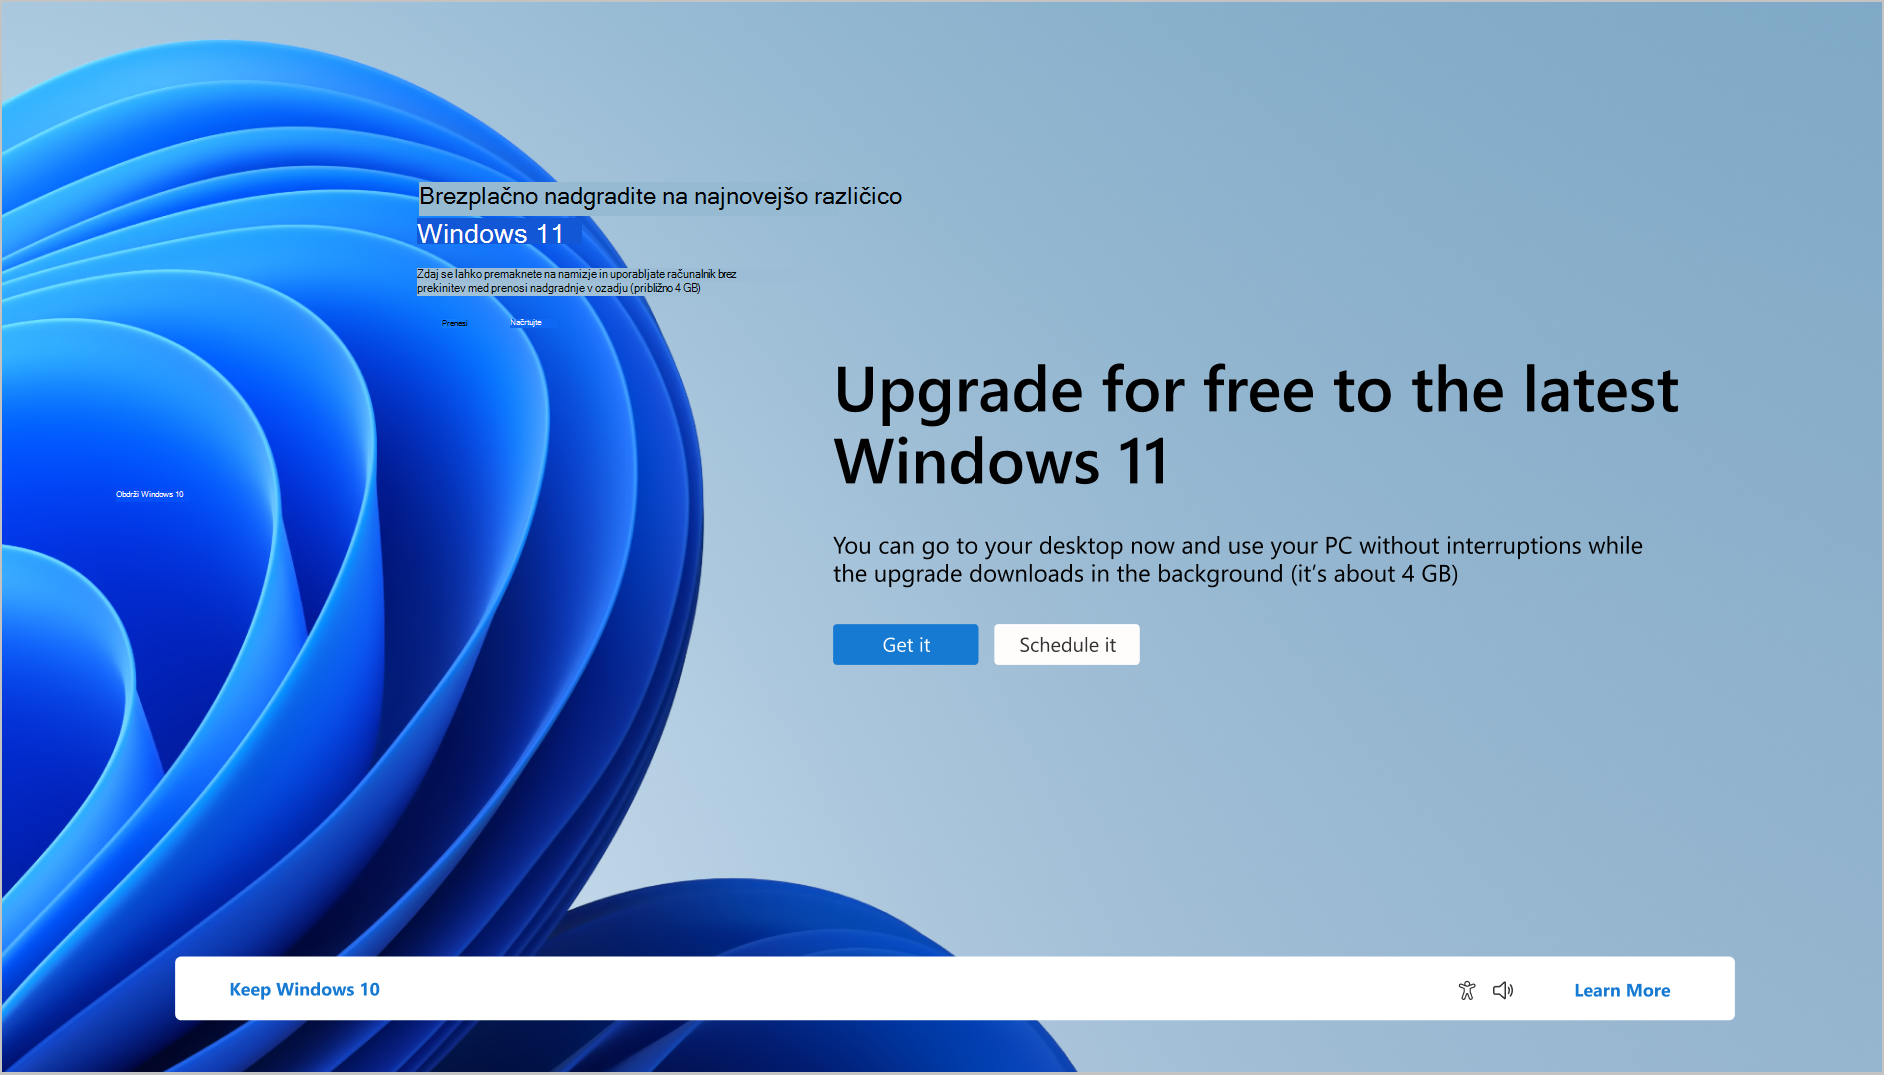 Posnetek zaslona obvestila o tem, da lahko računalnik brezplačno nadgradite na Windows 11.